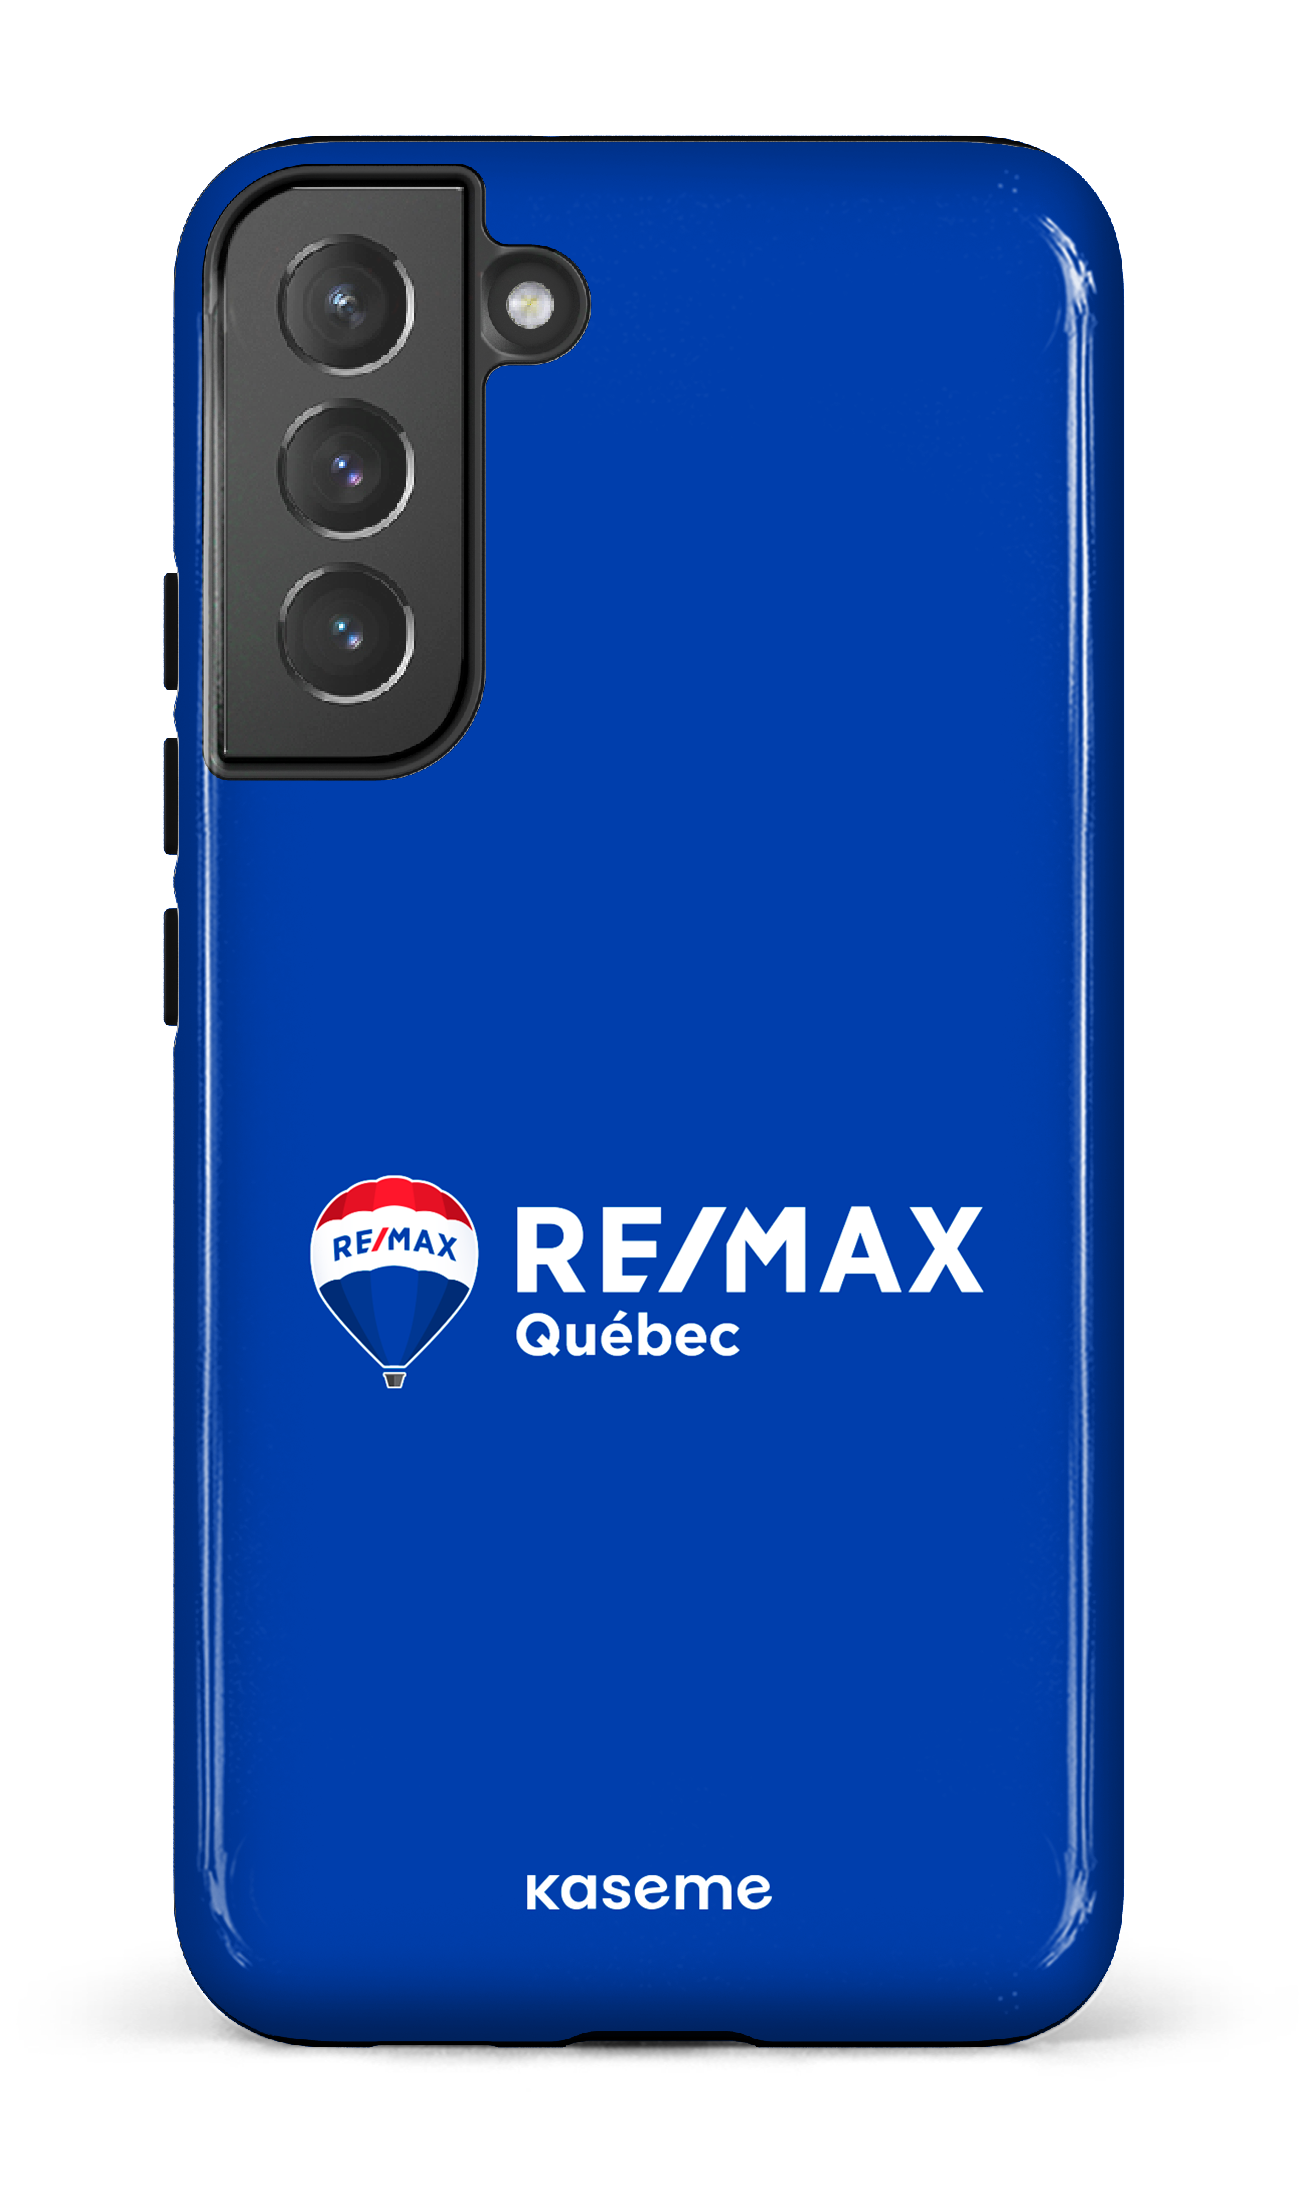 Remax Québec Bleu - Galaxy S22 Plus